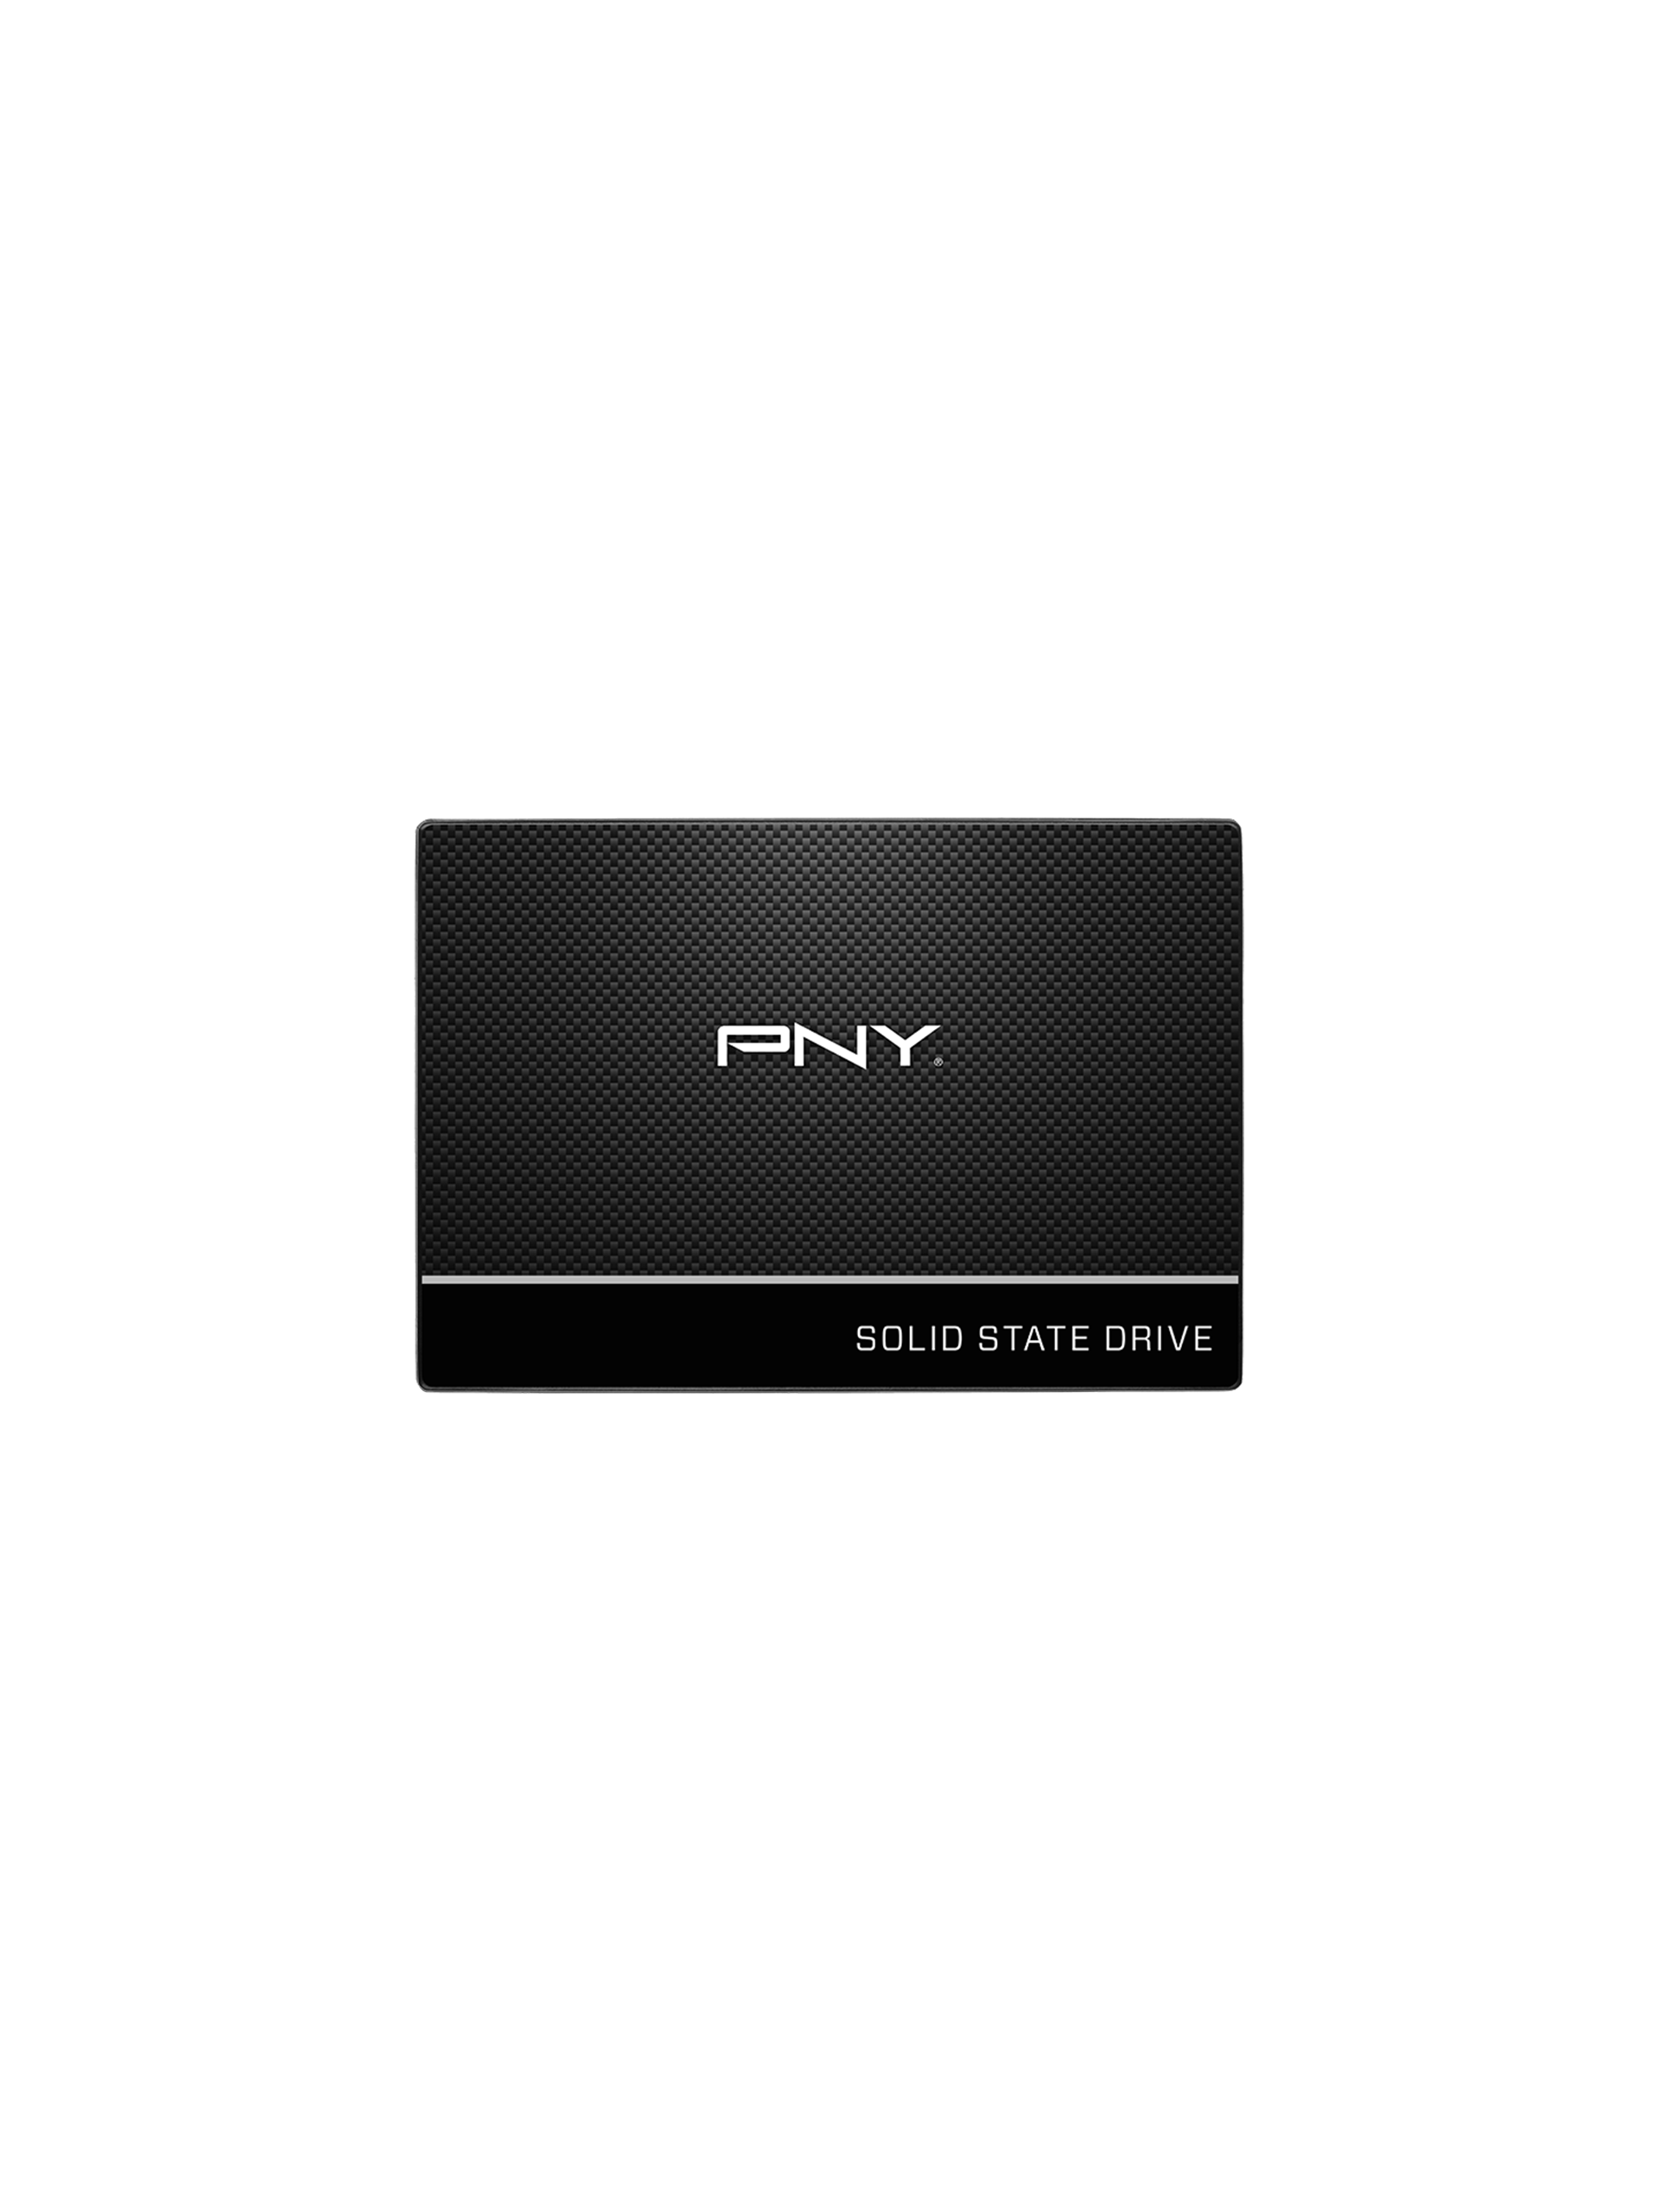 PNY CS900 960GB 3D NAND 2.5&#8243; SATA III Internal Solid State Drive (SSD)